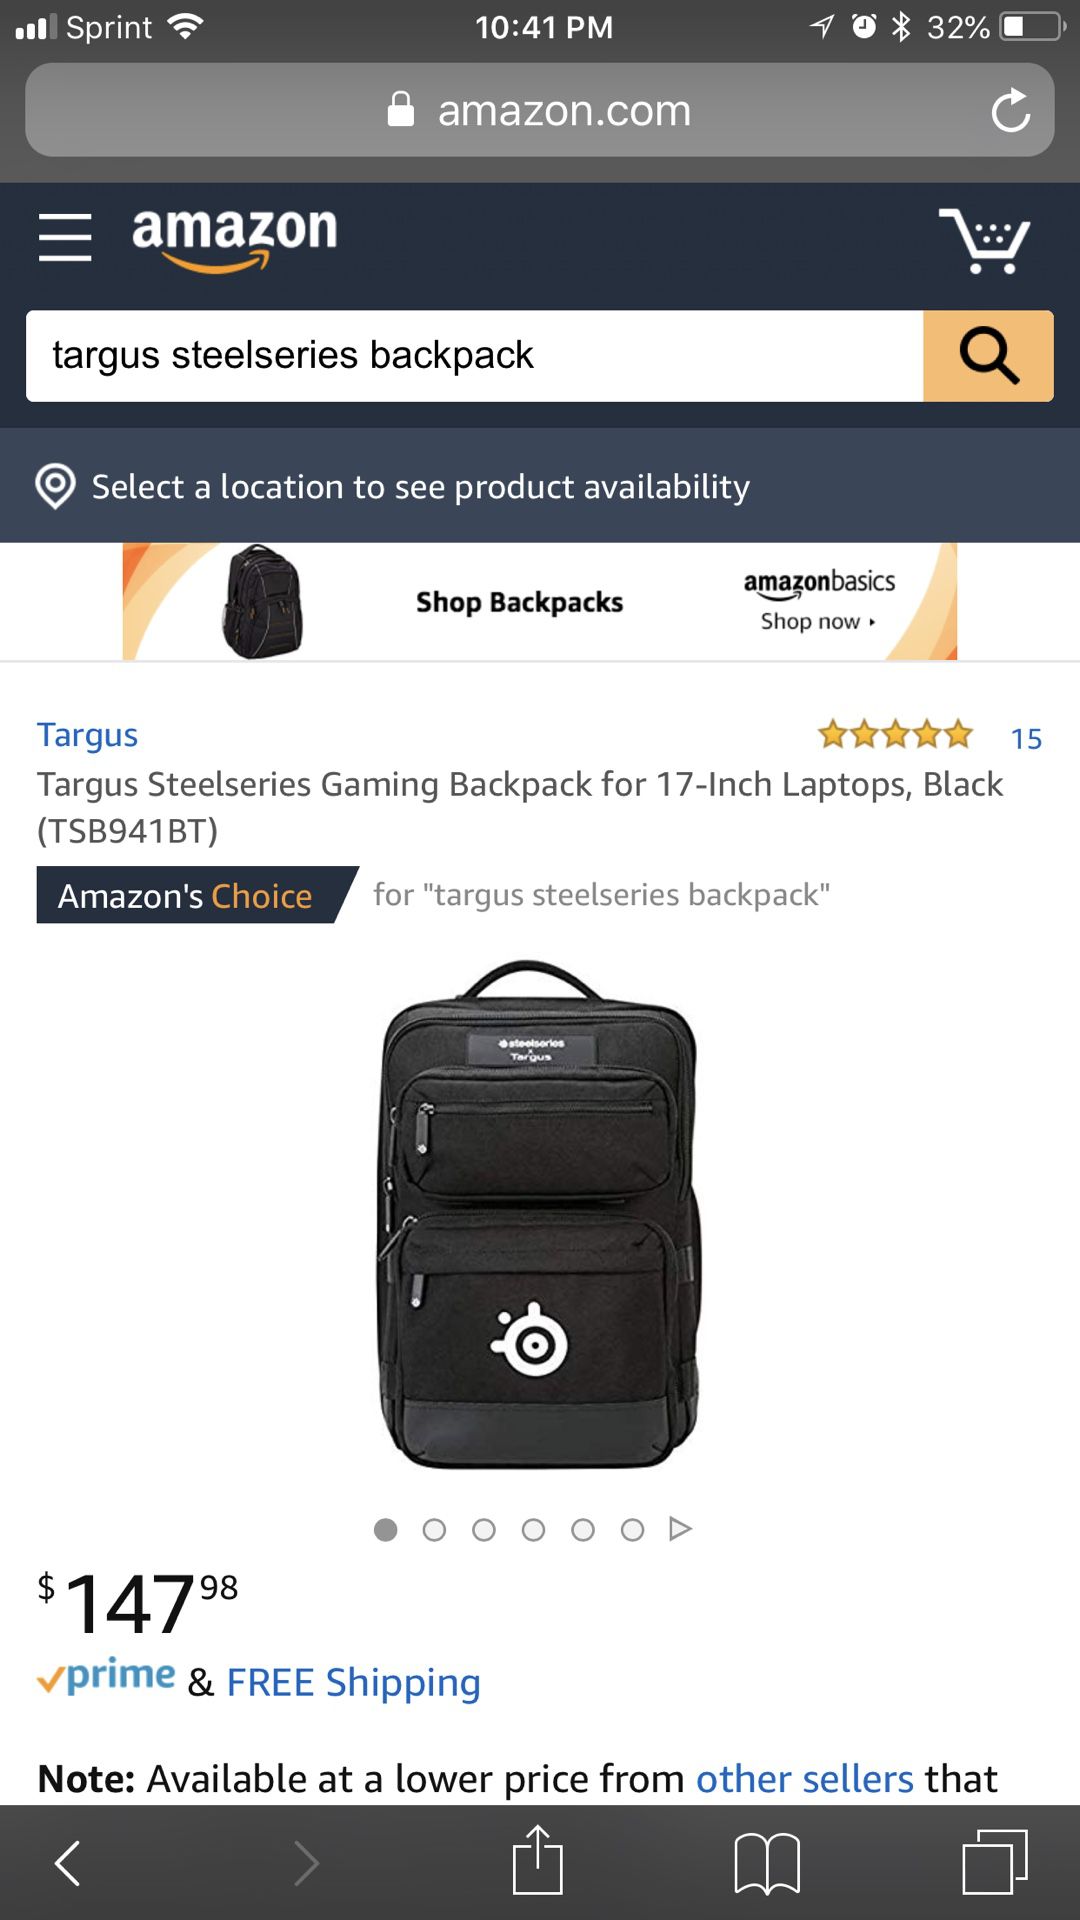 Targus Steelseries Gaming Backpack -17 inch Laptops